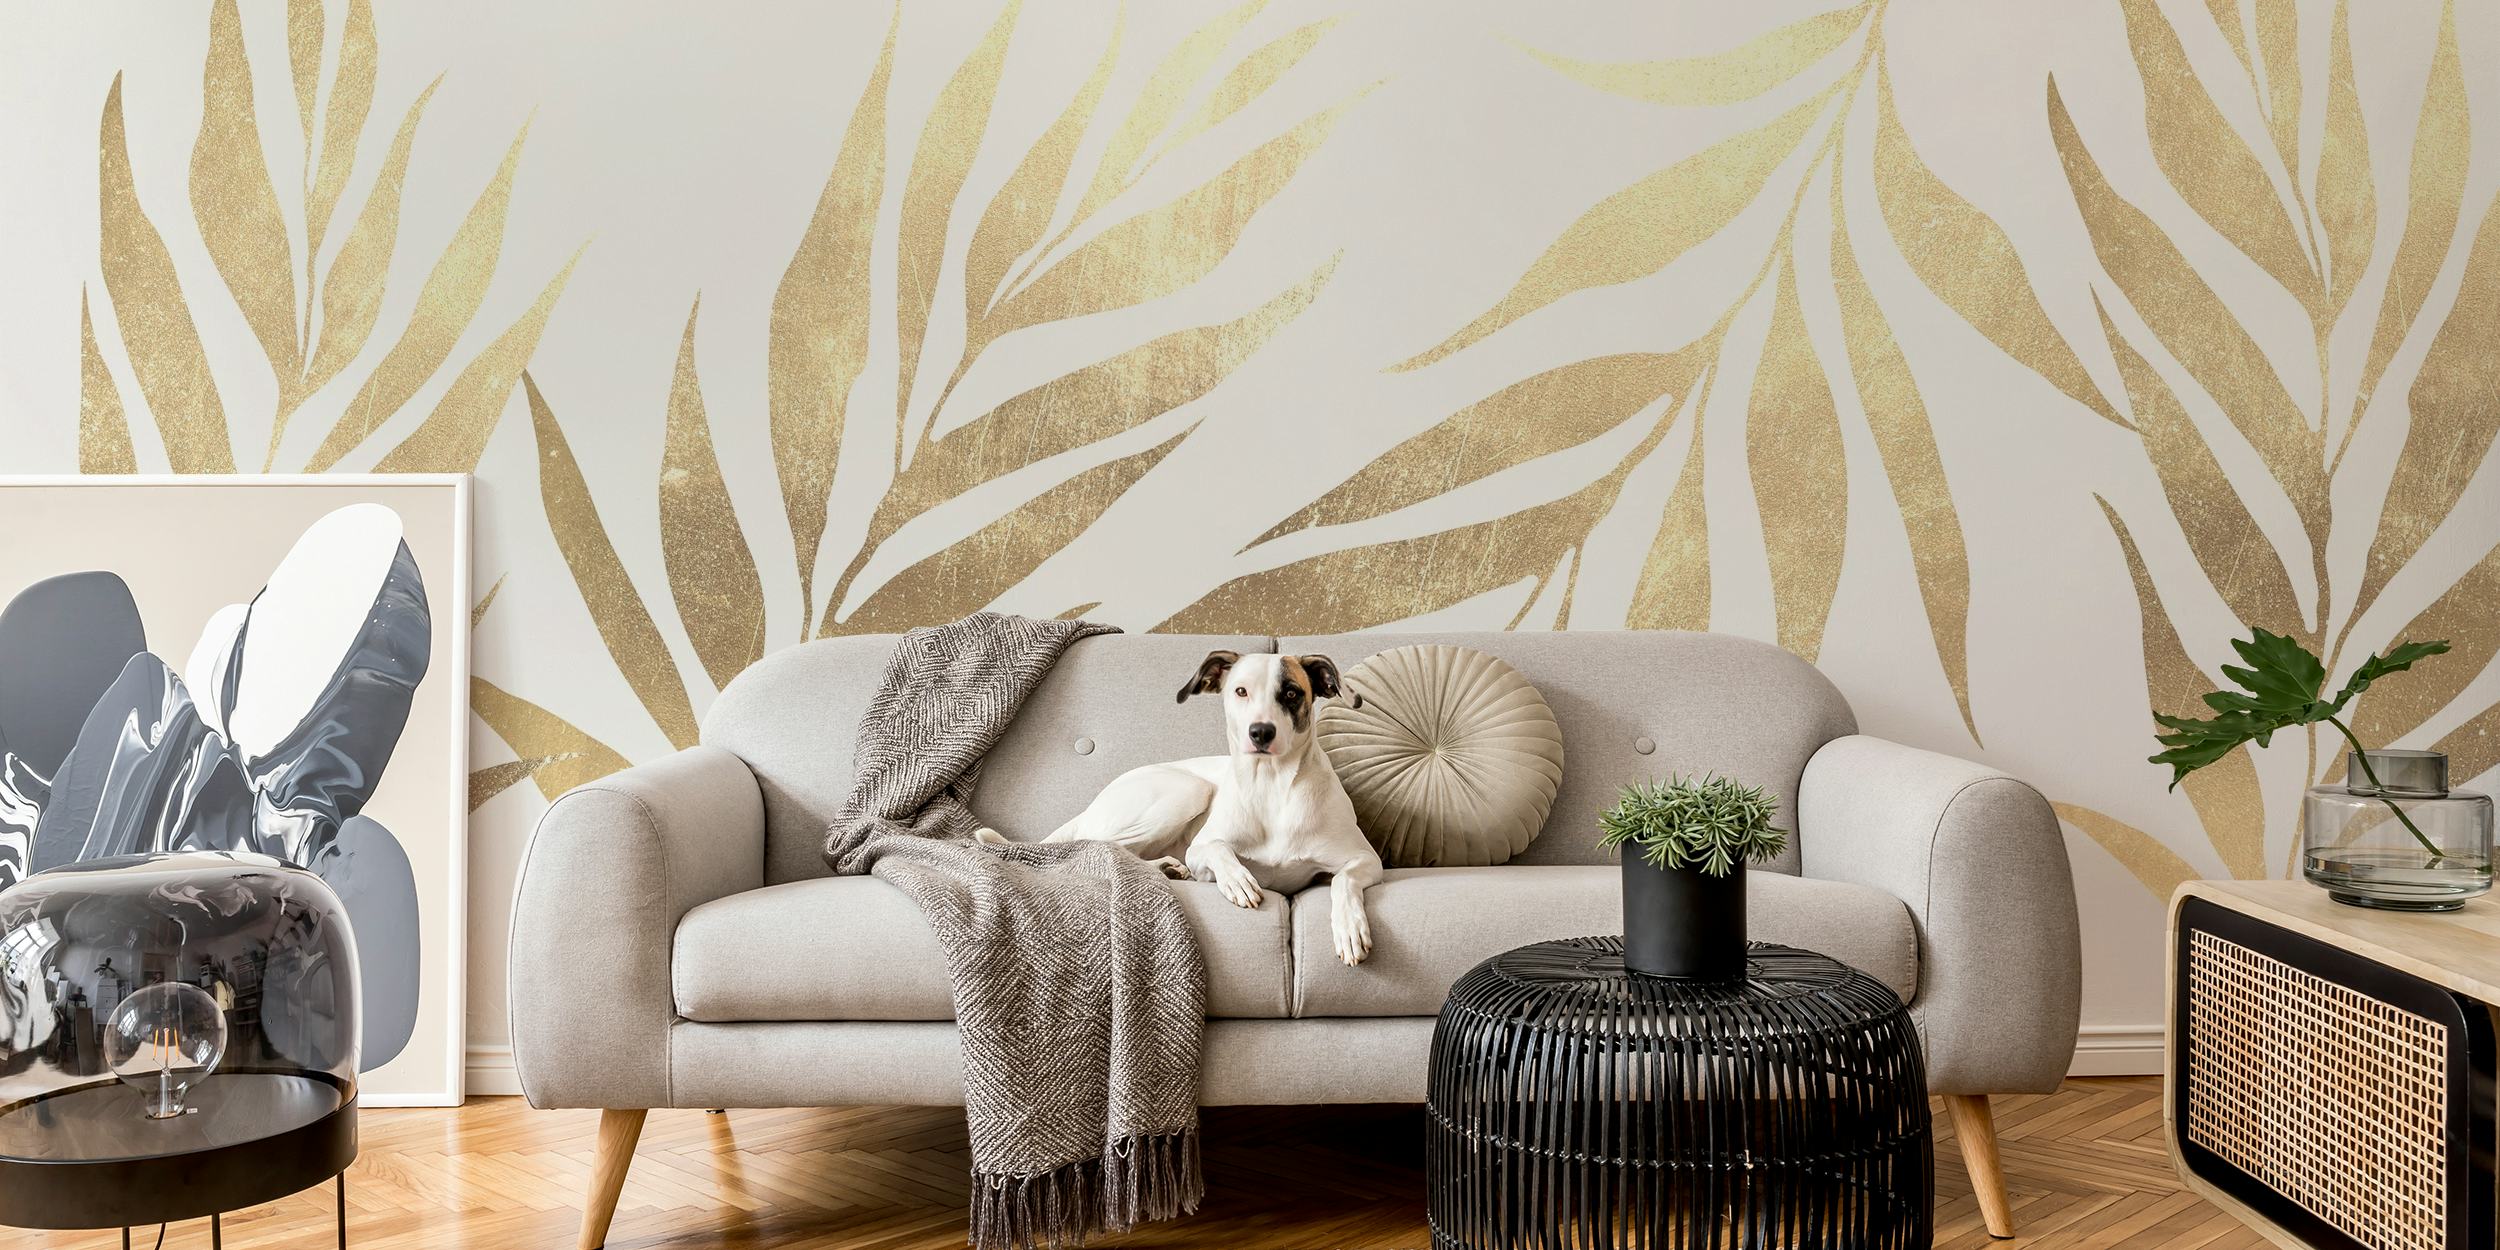 Fotomural vinílico elegante de folhas tropicais em tons dourados para decoração de interiores